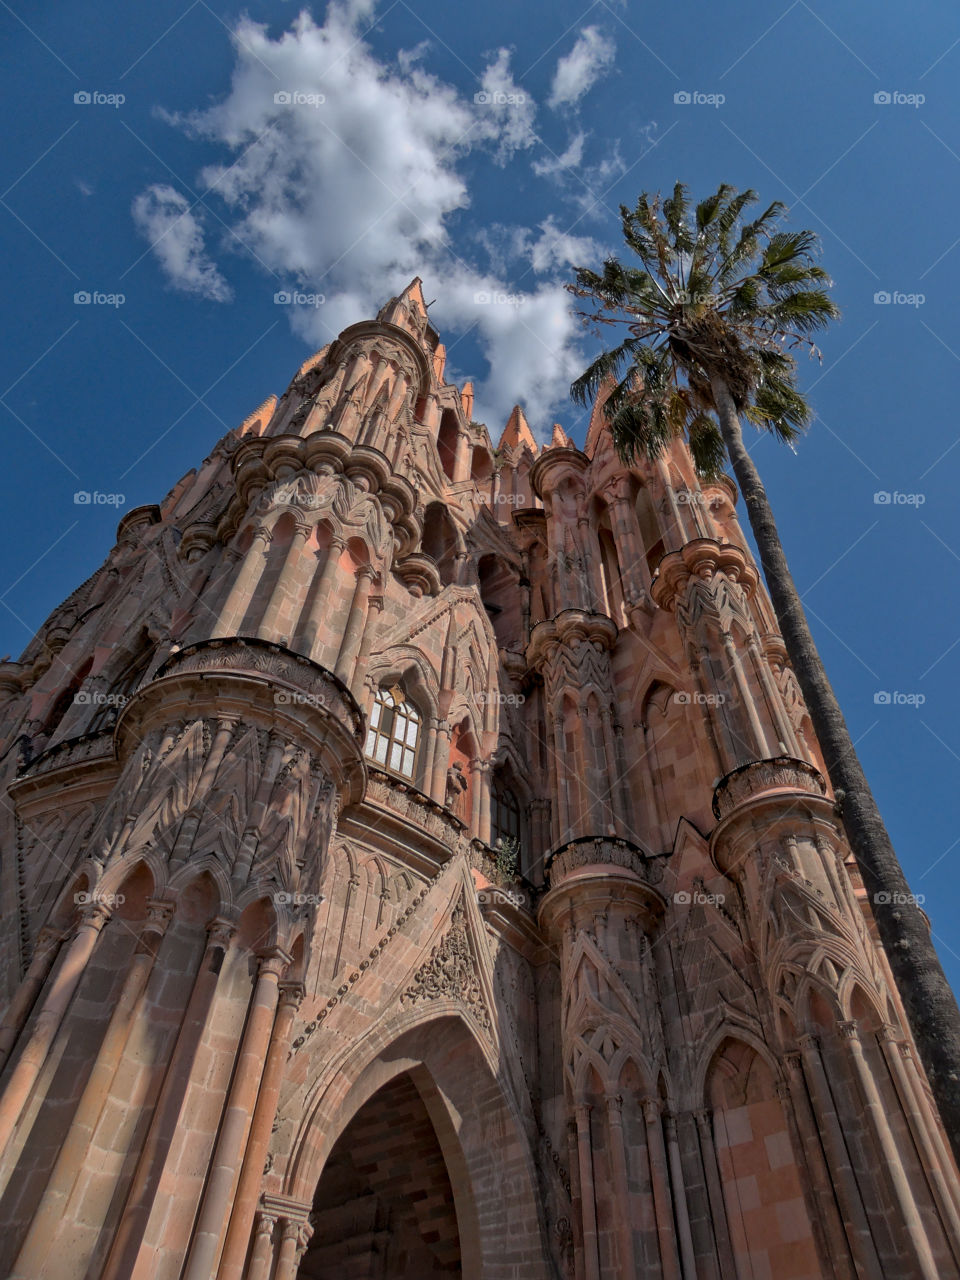 Low angle view of "Parroquia de San Miguel Arcangel" in San Miguel de Allende, Guanajuato, Mexico